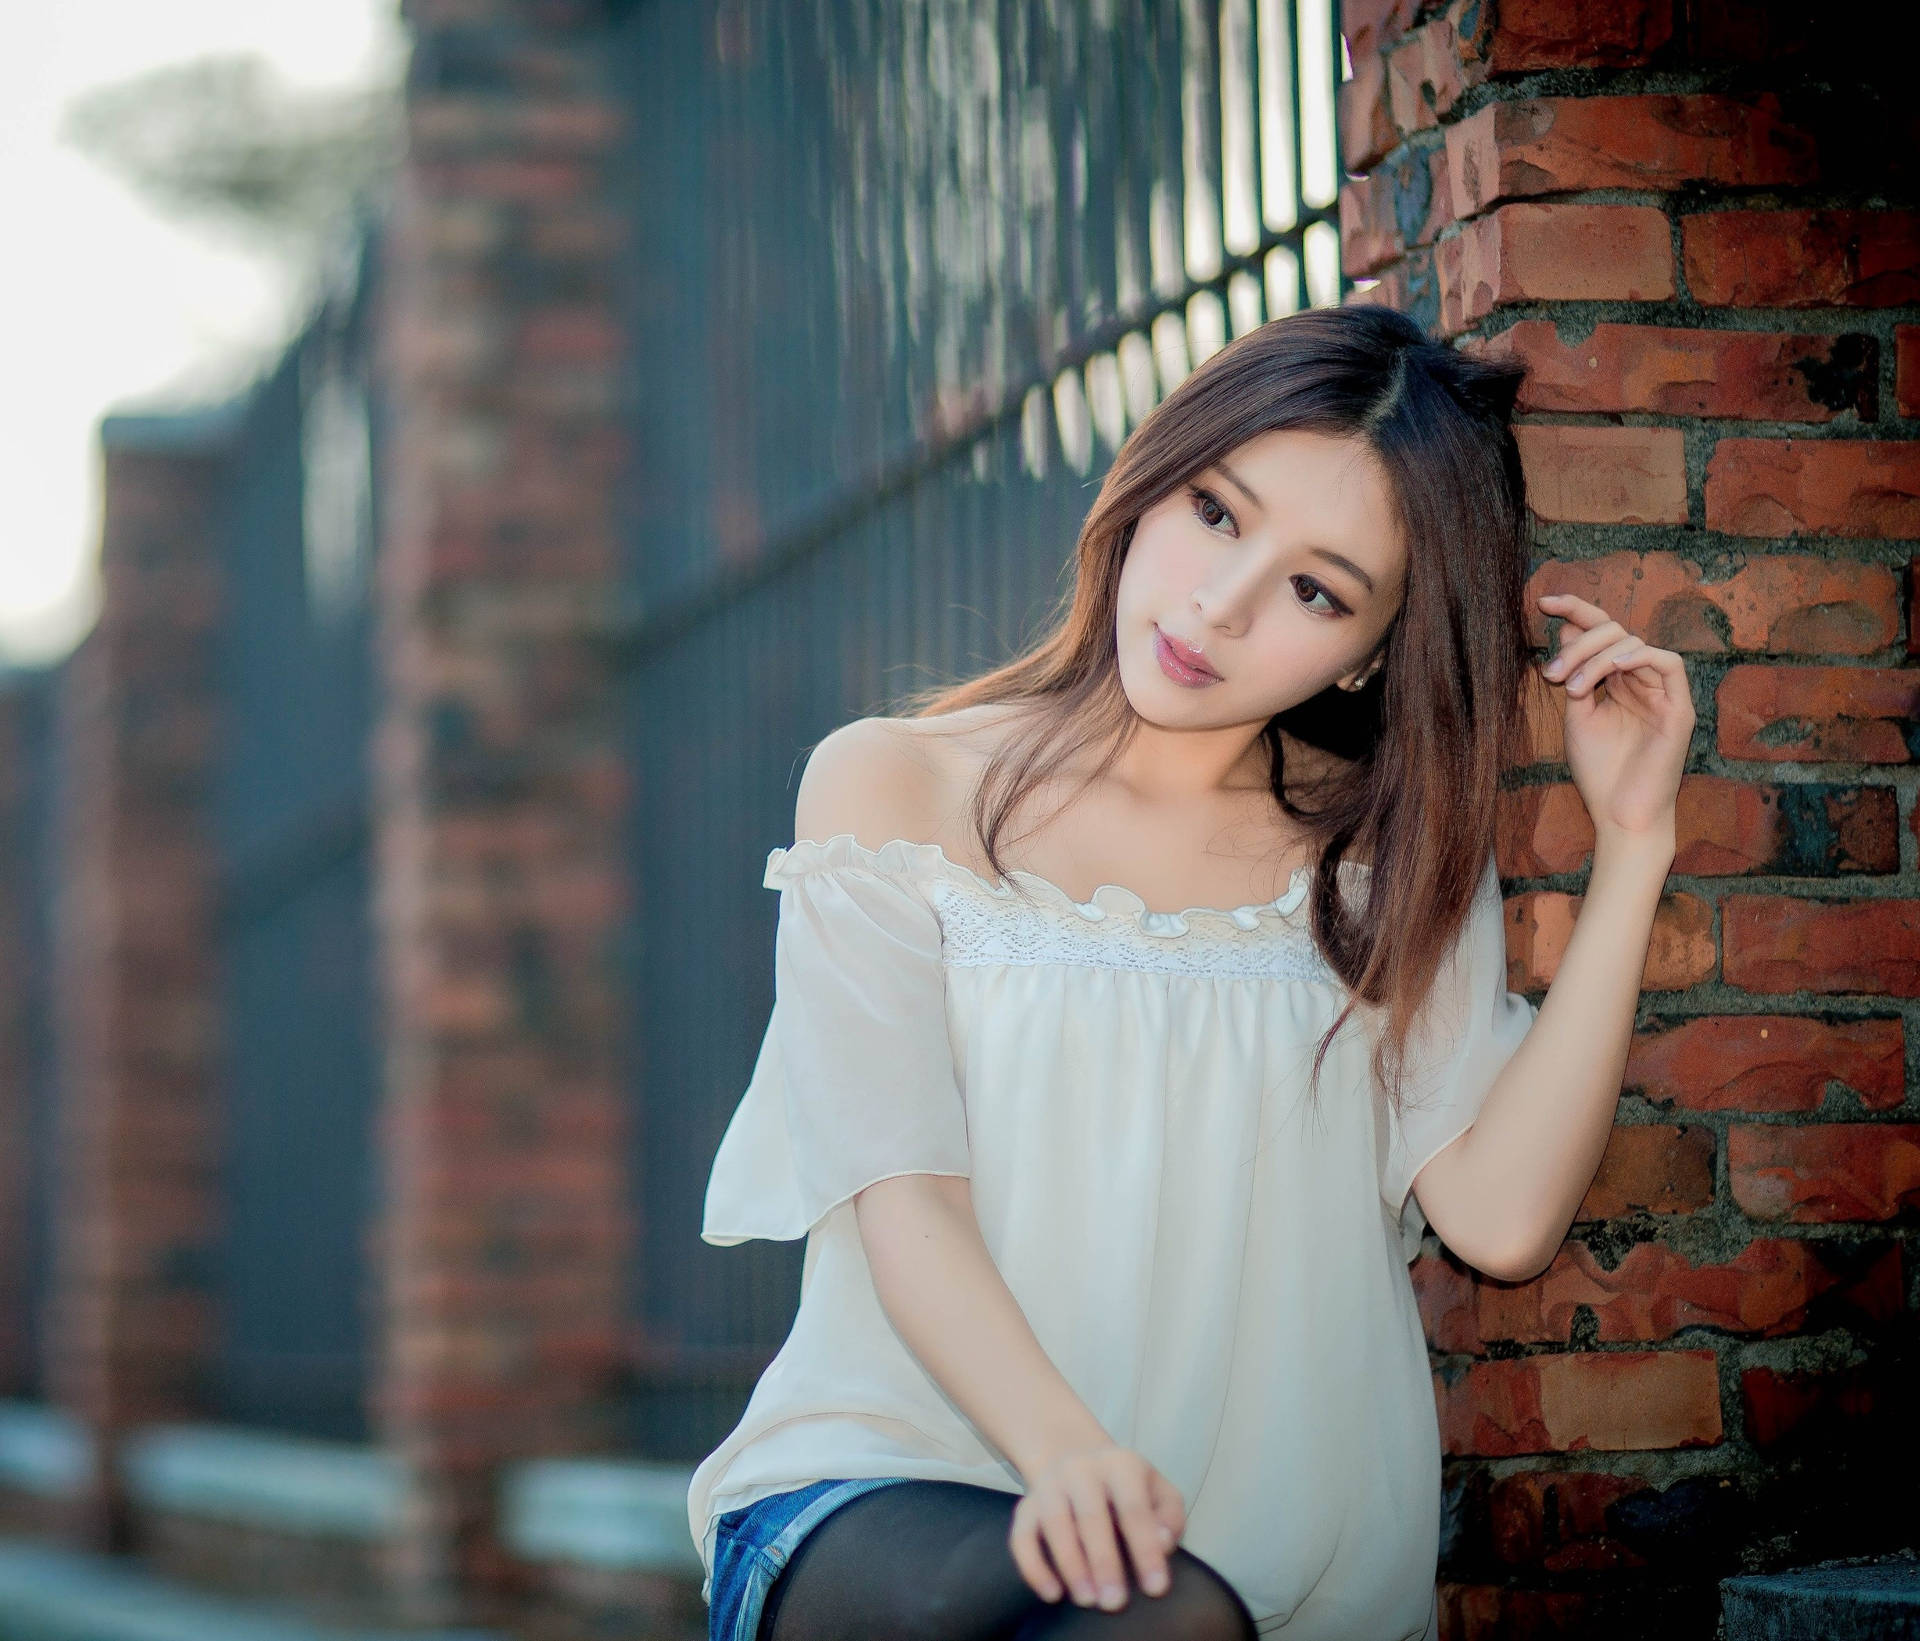 Chinese Girl White Tube Blouse Background